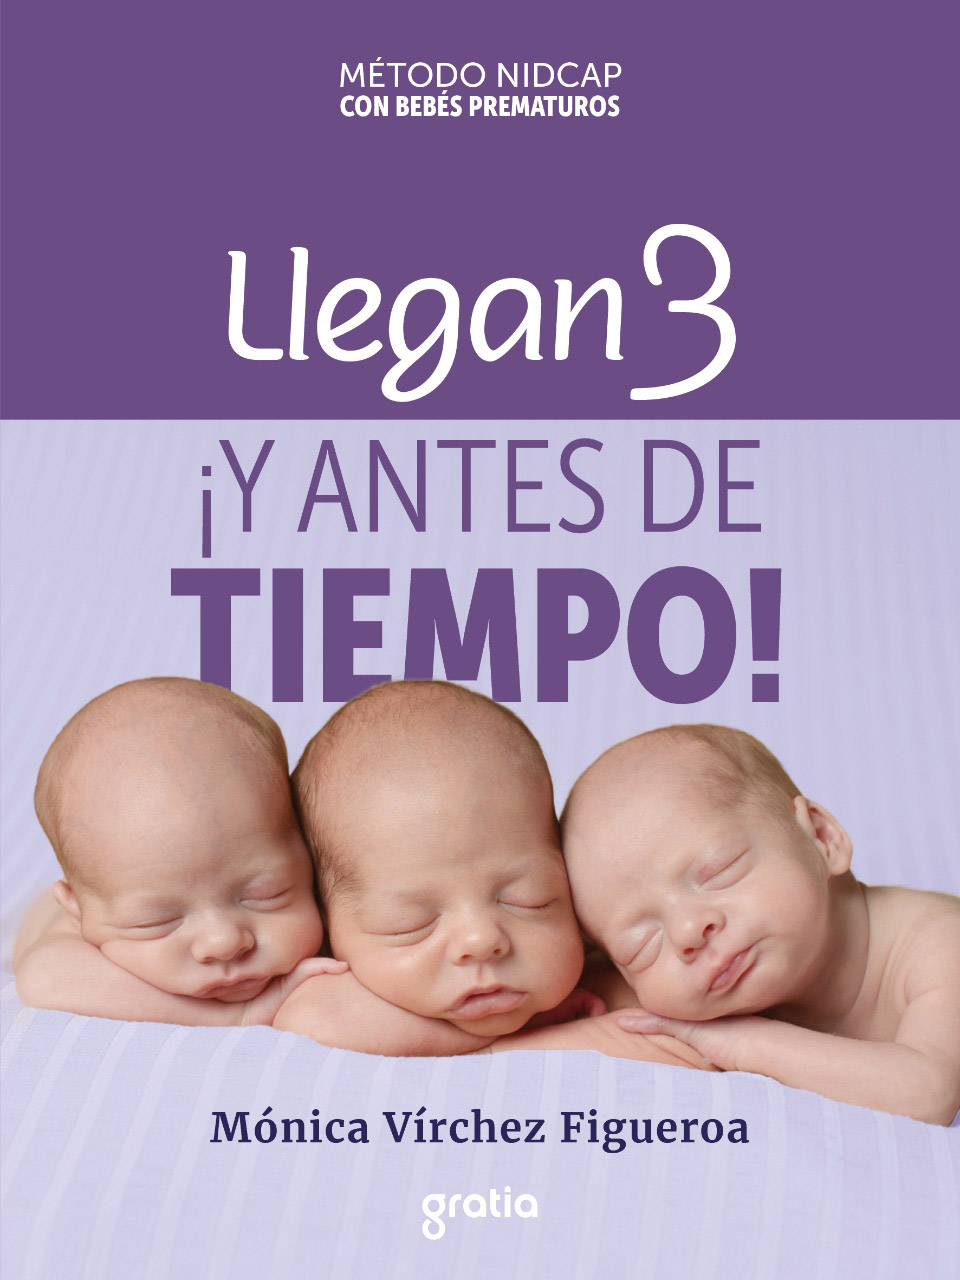 Llegan 3 YANTES DE TIEMPO ISBN 978-84-122619-4-3 1era edición 2020 - photo 3